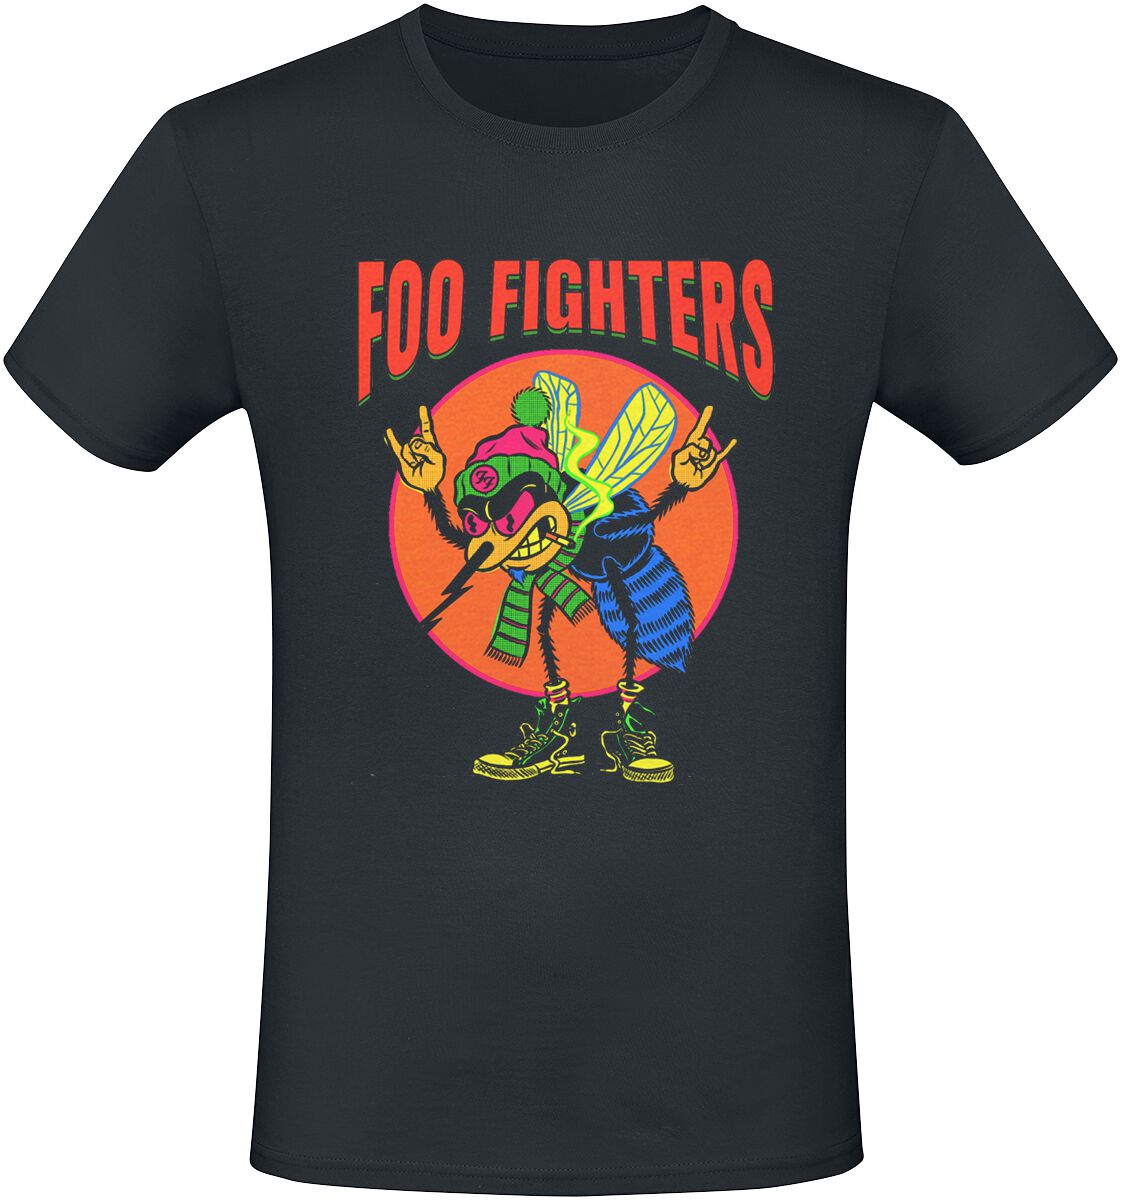 Foo Fighters T-Shirt - Mosquito - S bis 3XL - für Männer - Größe M - schwarz  - Lizenziertes Merchandise!